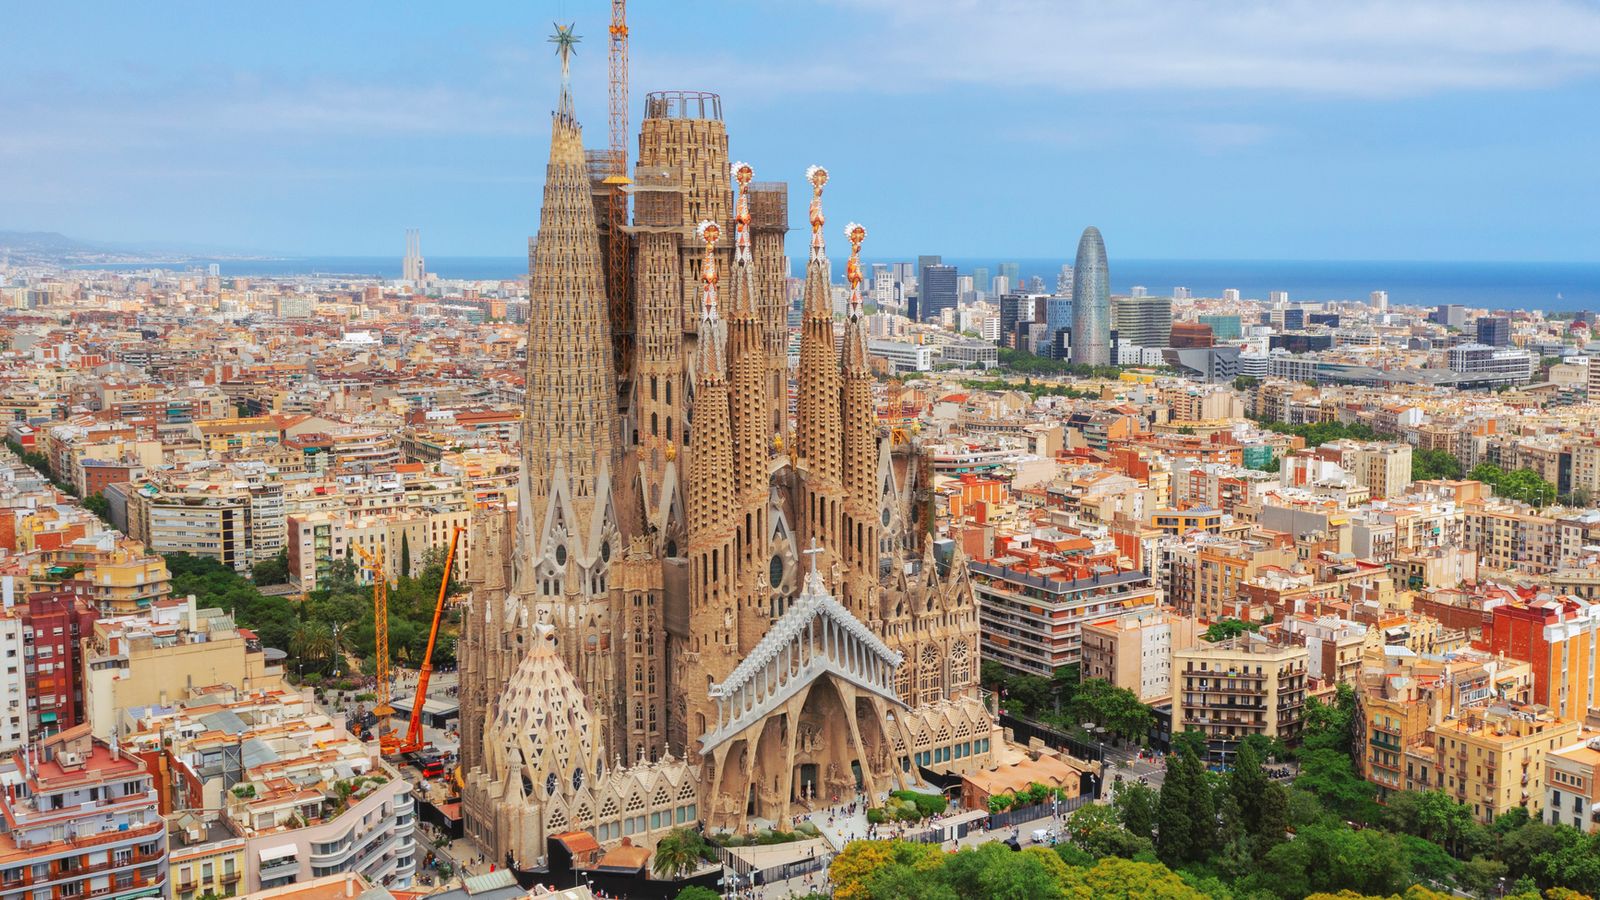 Според фондация La Sagrada Familia организацията натоварена с изграждането и